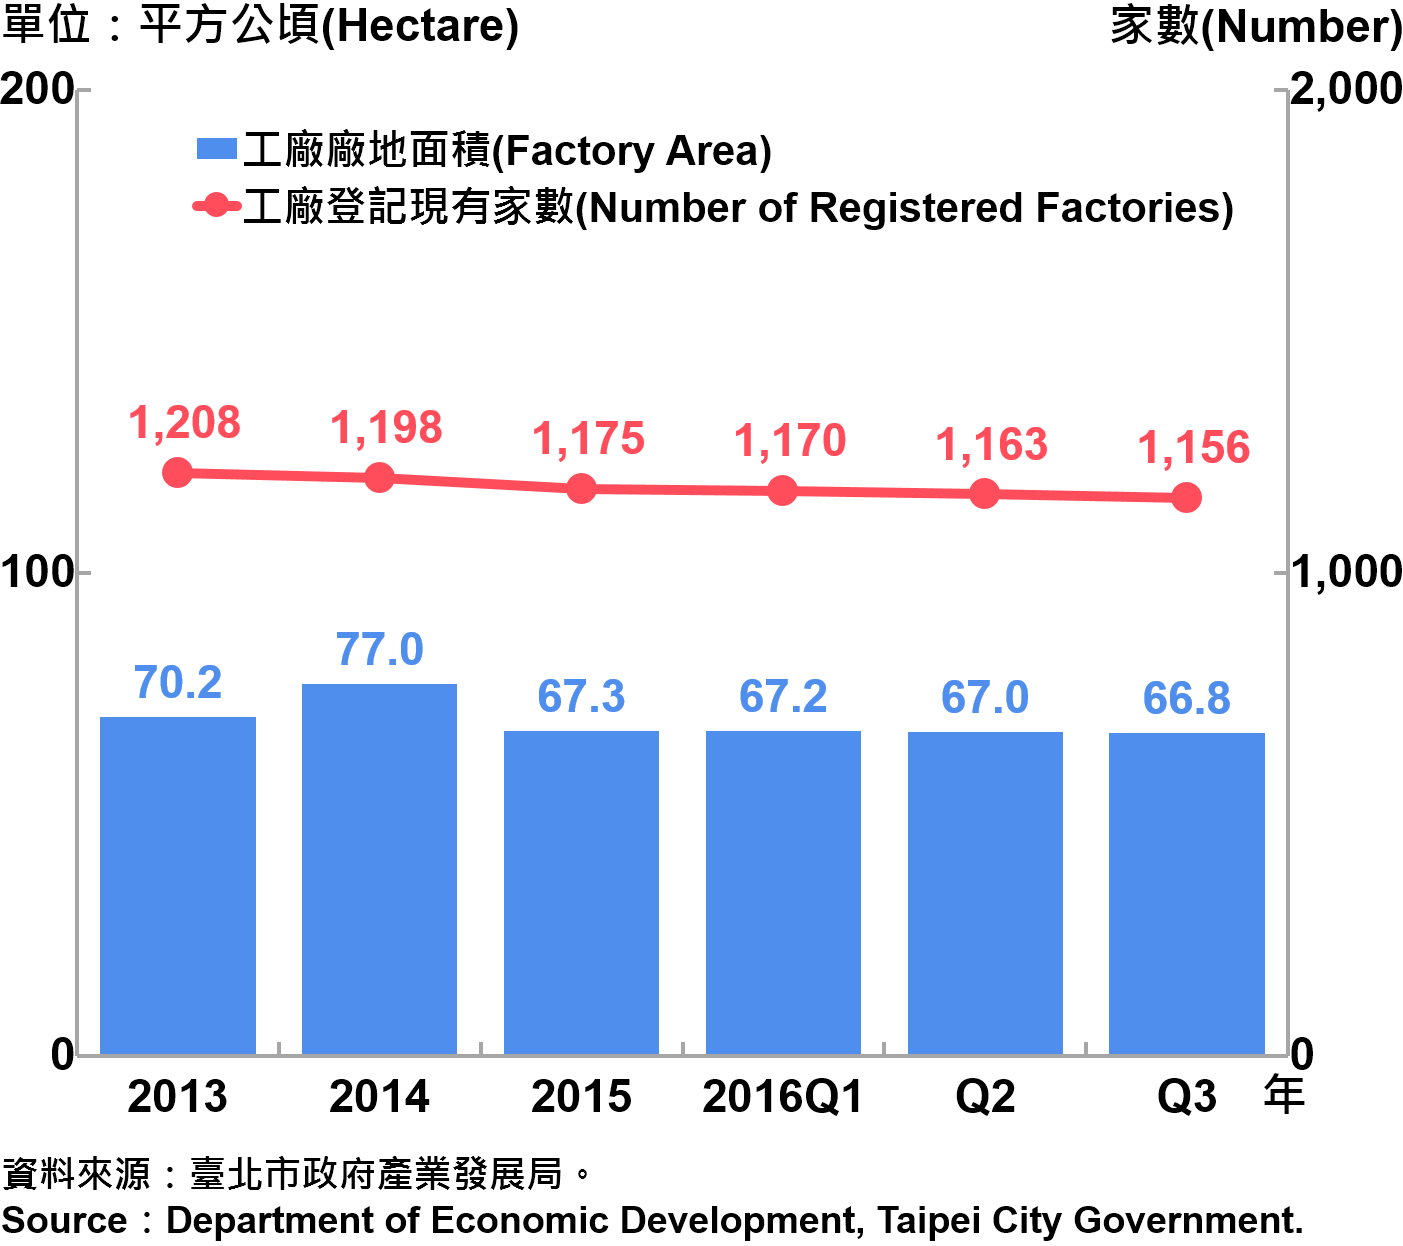 圖6、臺北市工廠登記家數及廠地面積—2016Q3 Number of Factories Registered and Factory Lands in Taipei—2016Q3